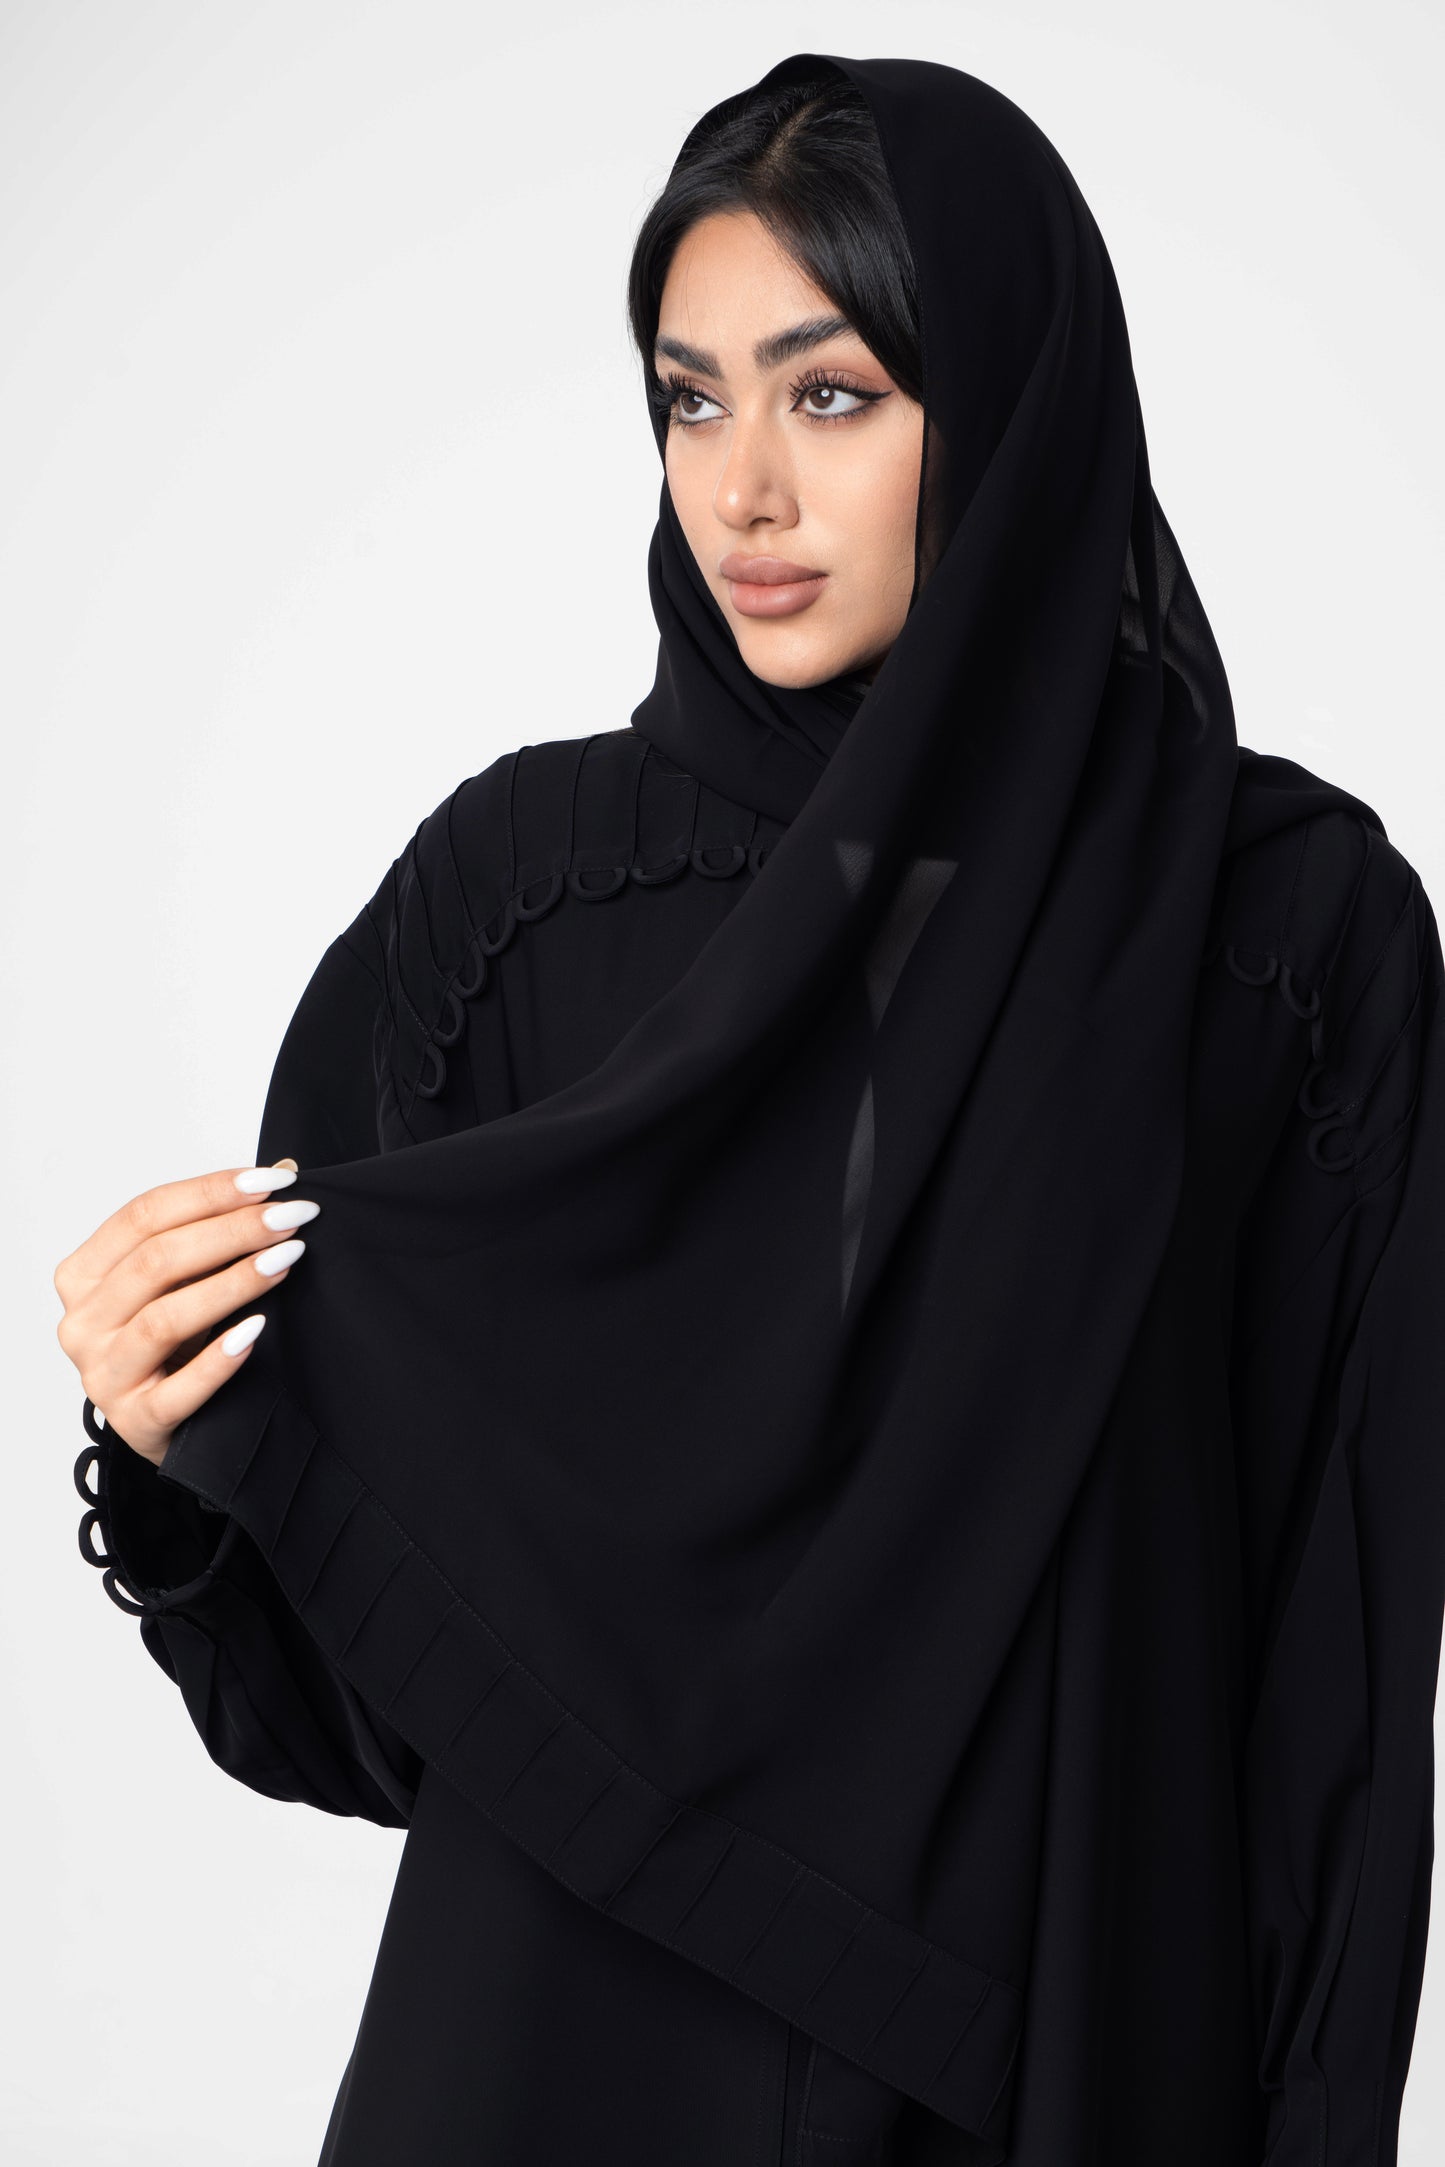 Elegant Black Abaya With Ruffle Sleeves